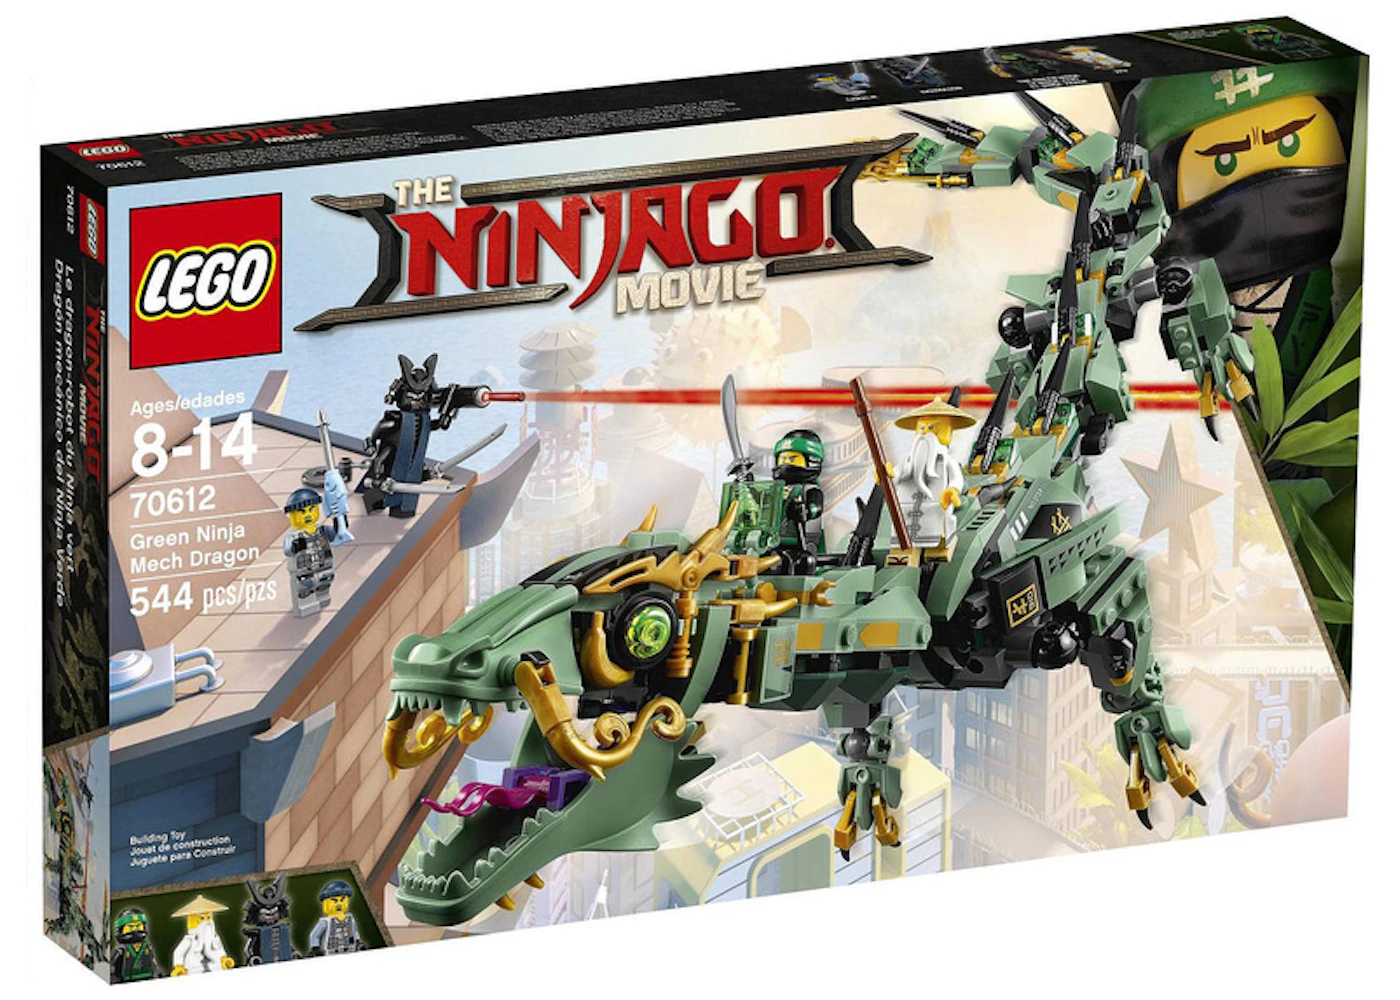 Expansión Privación orden LEGO The LEGO Ninjago Movie Green Ninja Mech Dragon Set 70612 - ES